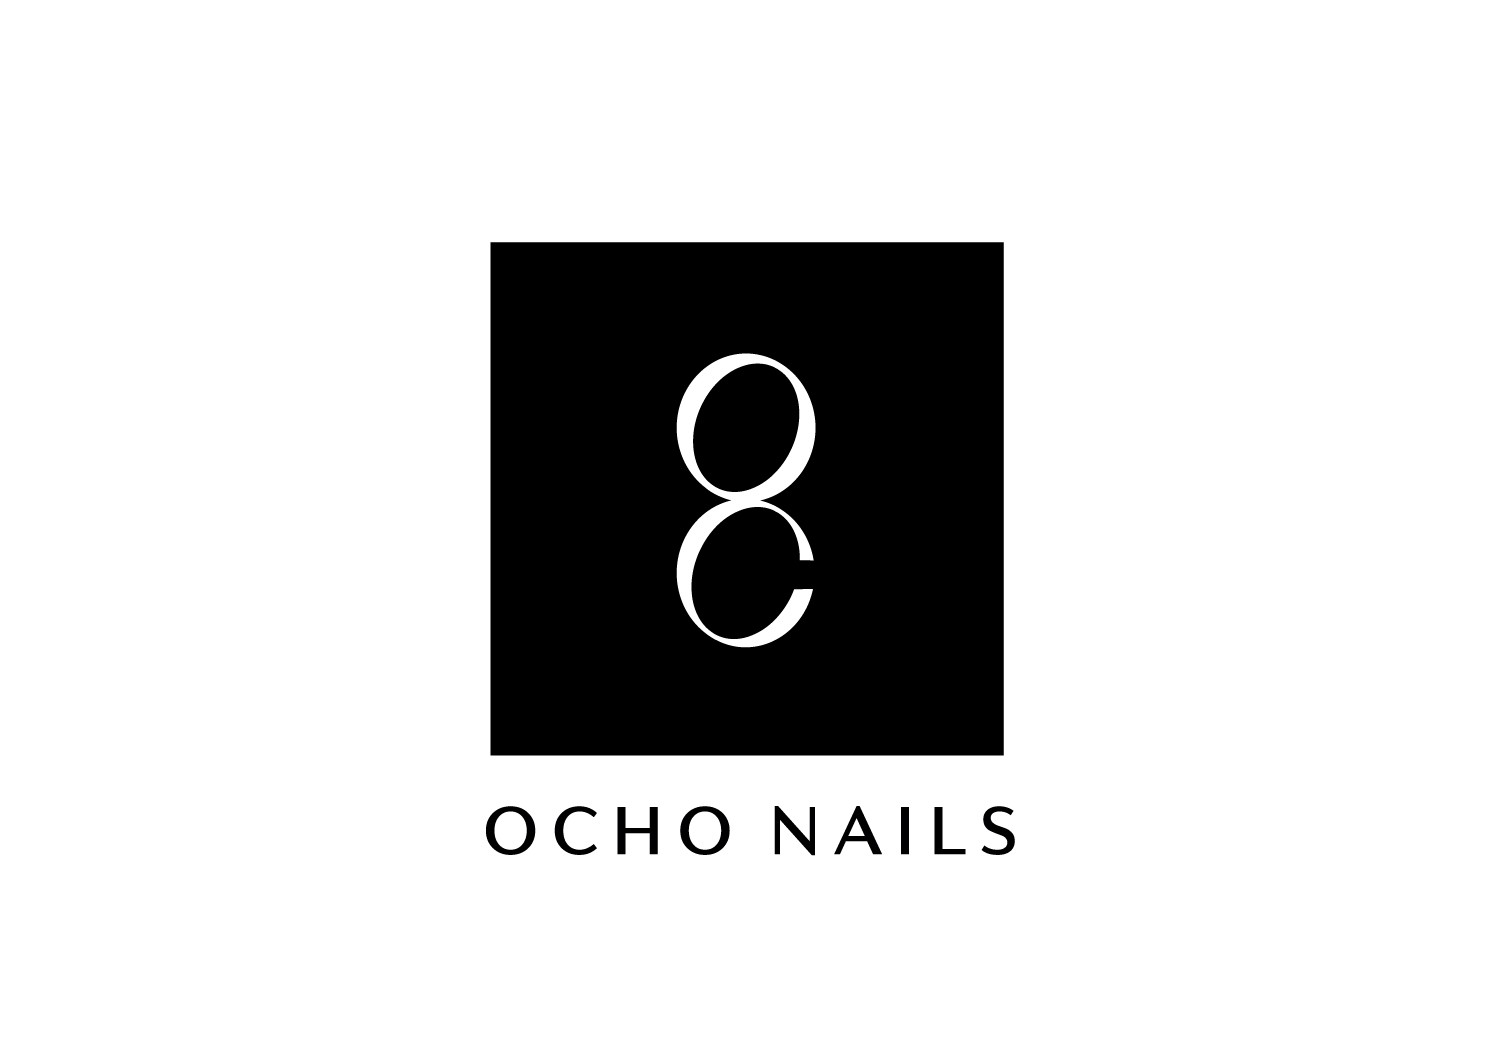 Ocho Nails